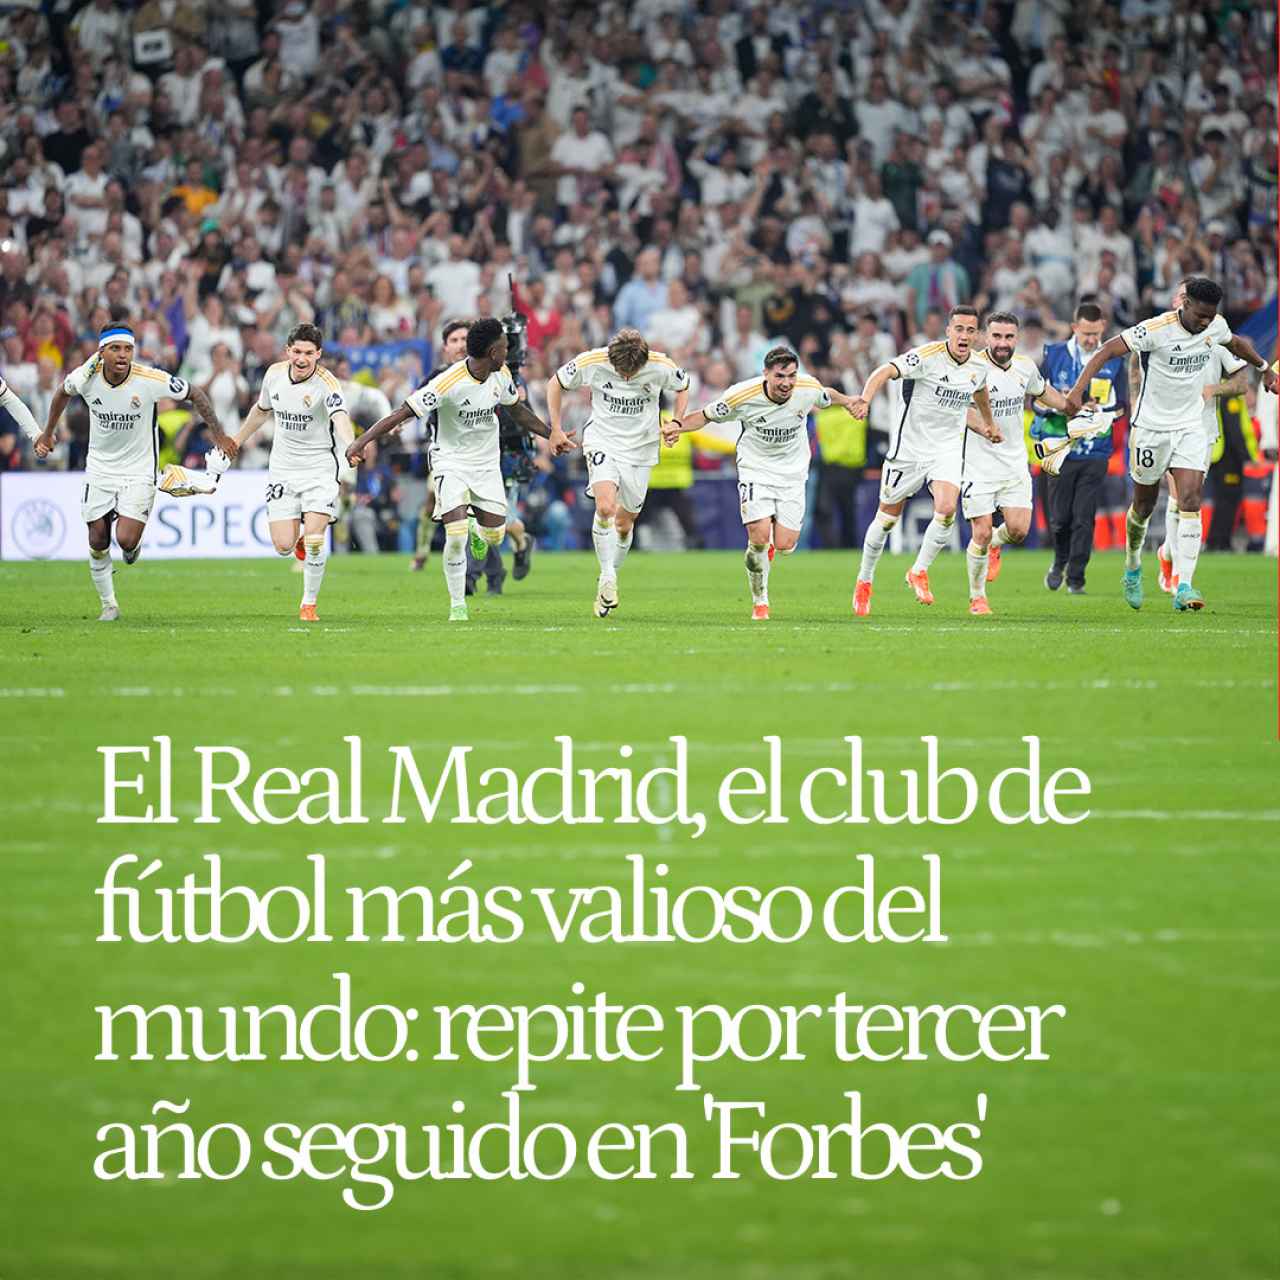 El Real Madrid, el club de fútbol más valioso del mundo: repite por tercer año seguido en 'Forbes'